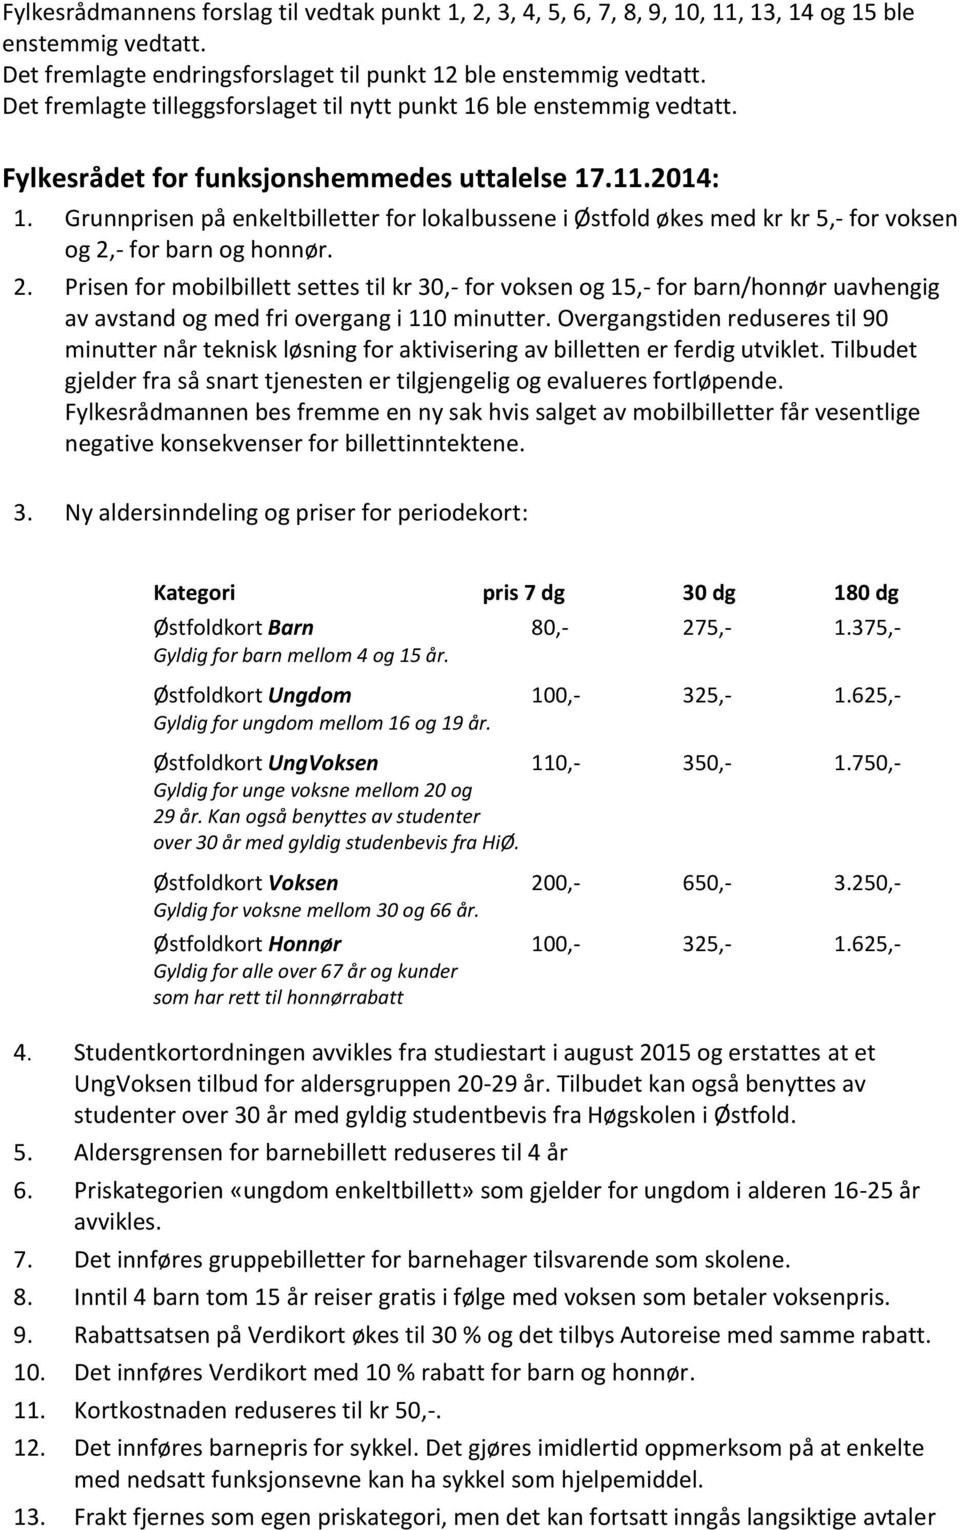 Grunnprisen på enkeltbilletter for lokalbussene i Østfold økes med kr kr 5,- for voksen og 2,